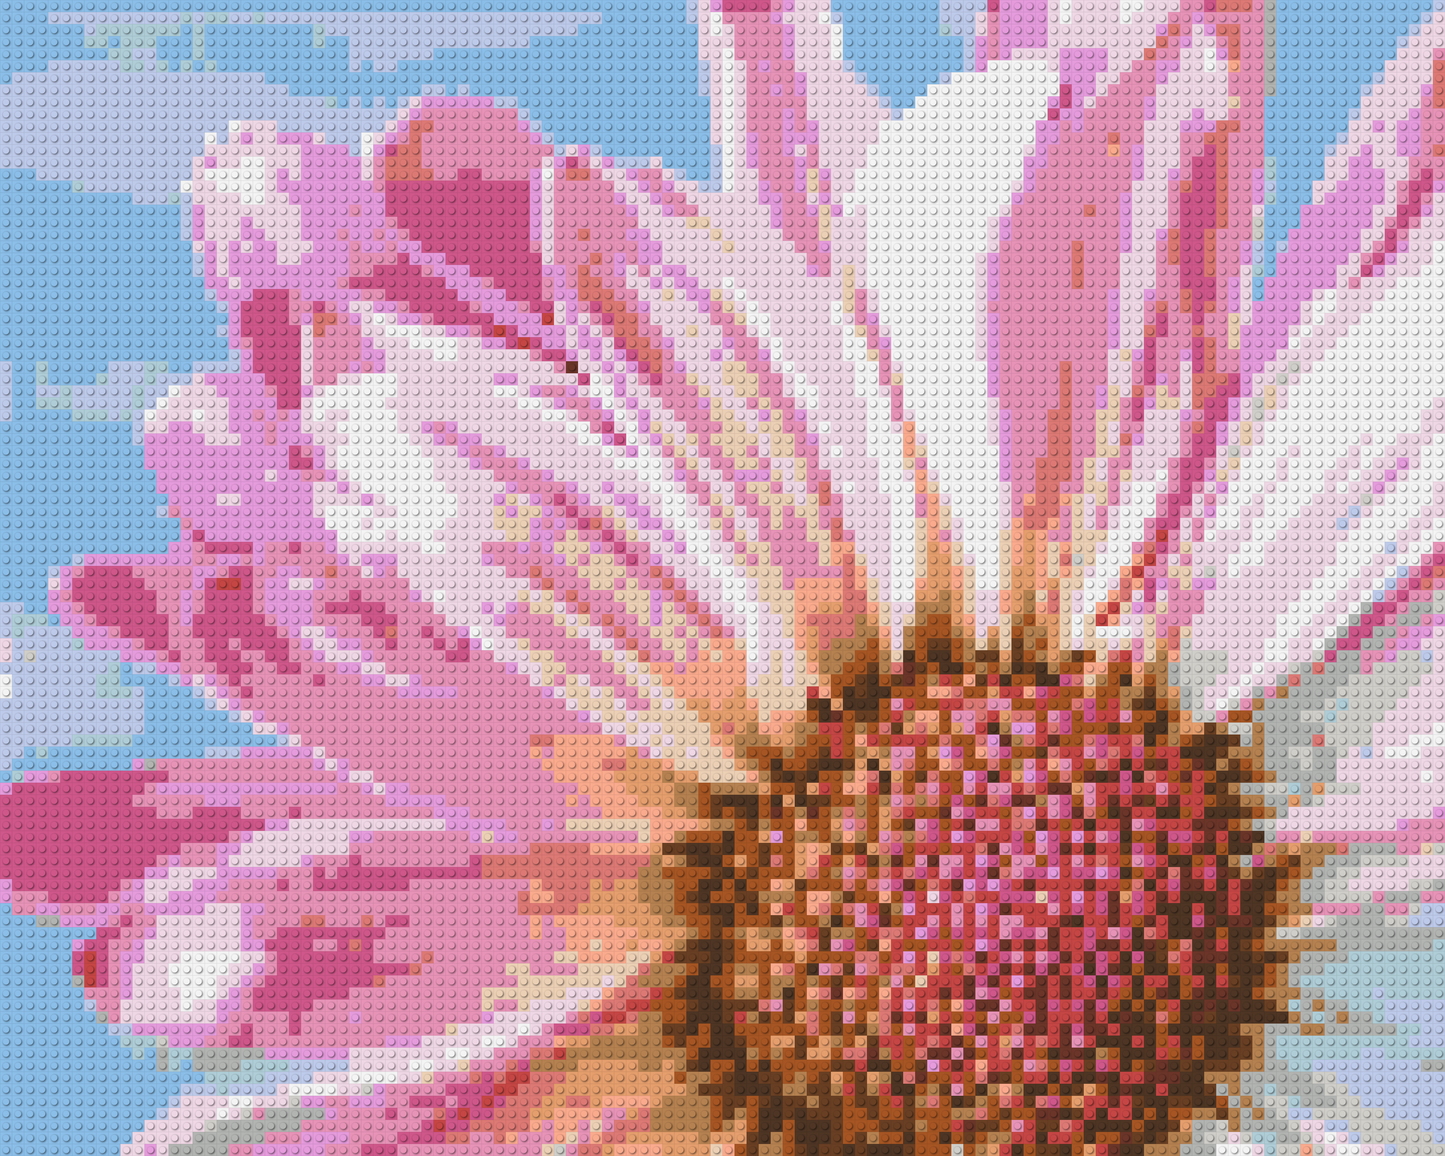 Pink Daisy - Brick Art Mosaic Kit